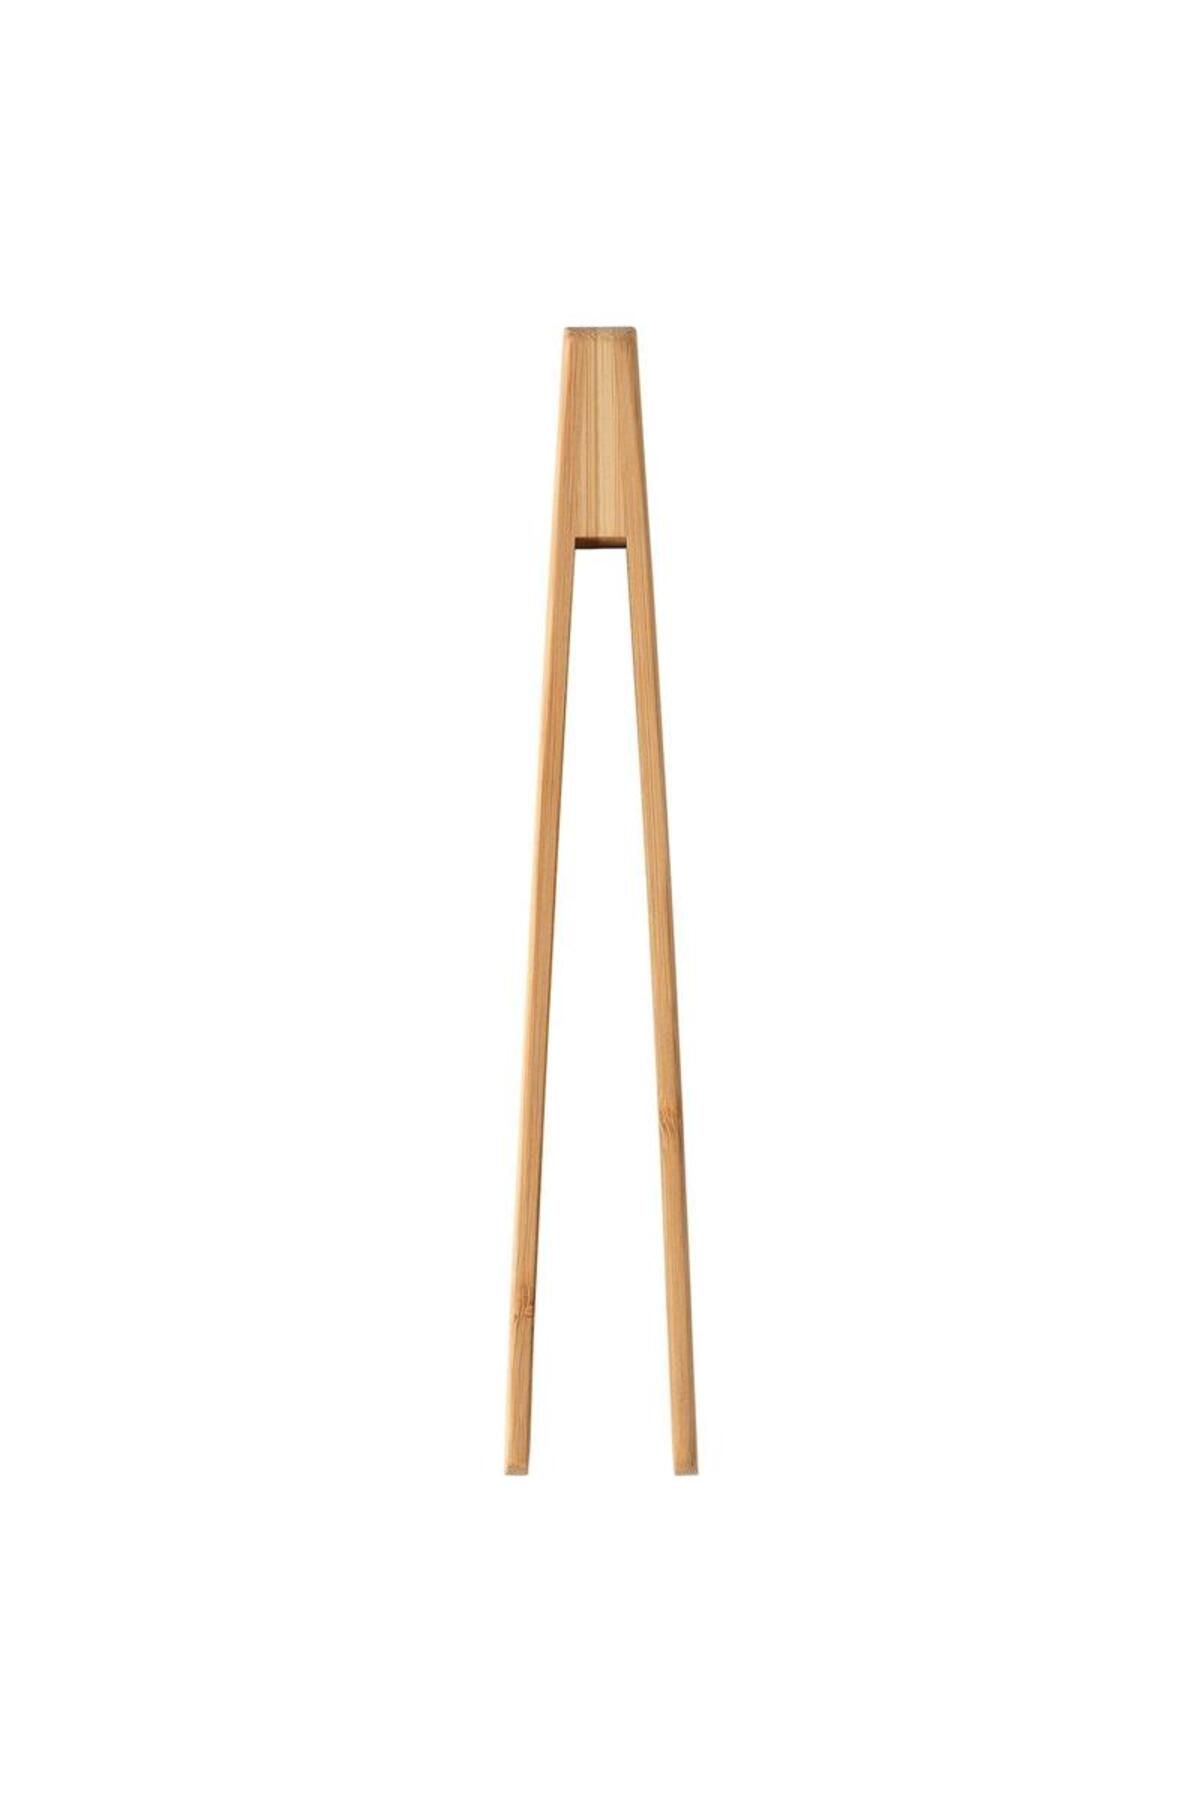 IKEA Ostbıt Servis Maşası Bambu 00453464